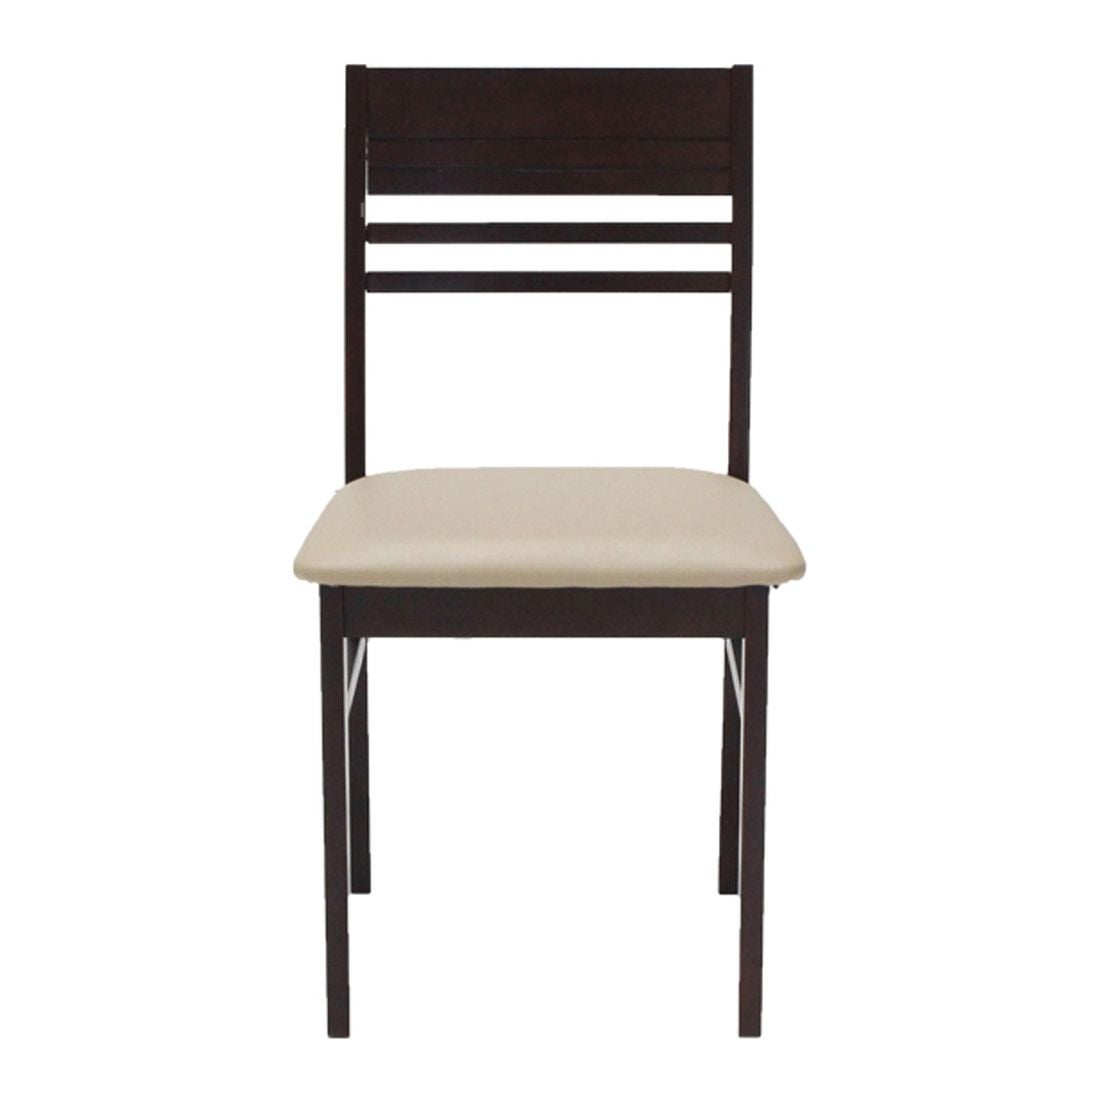 เก้าอี้ทานอาหาร เก้าอี้ไม้เบาะหนัง รุ่น Newnano-SB Design Square